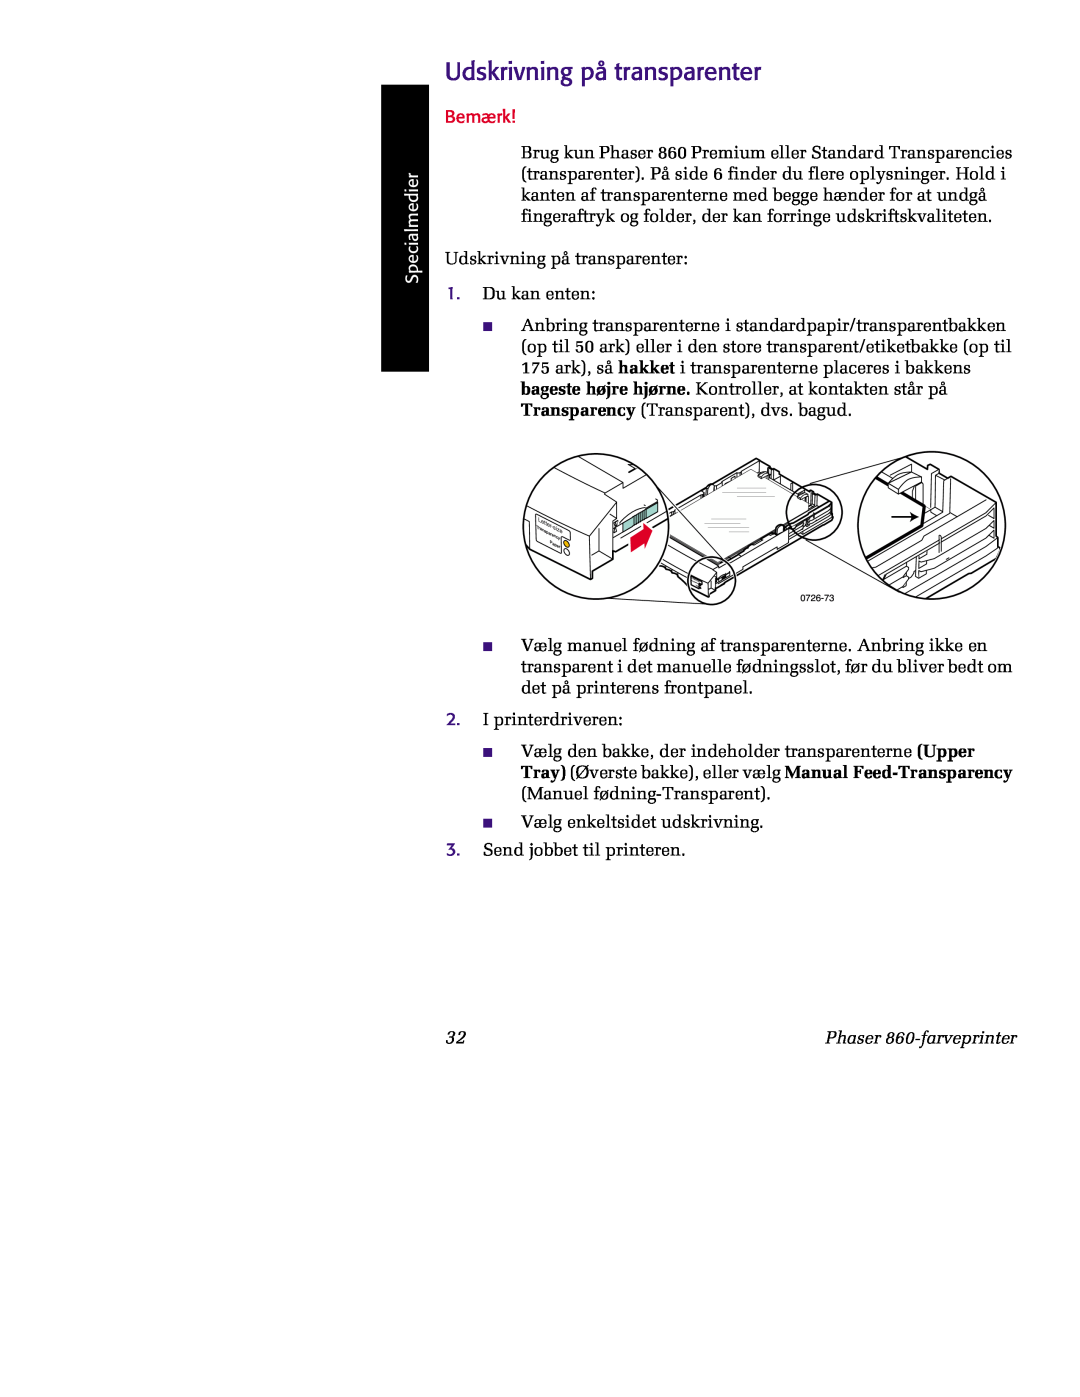 Tektronix Udskrivning på transparenter, 0726-73, Paper, Transpa rency, Specialmedier, Bemærk, Phaser 860-farveprinter 